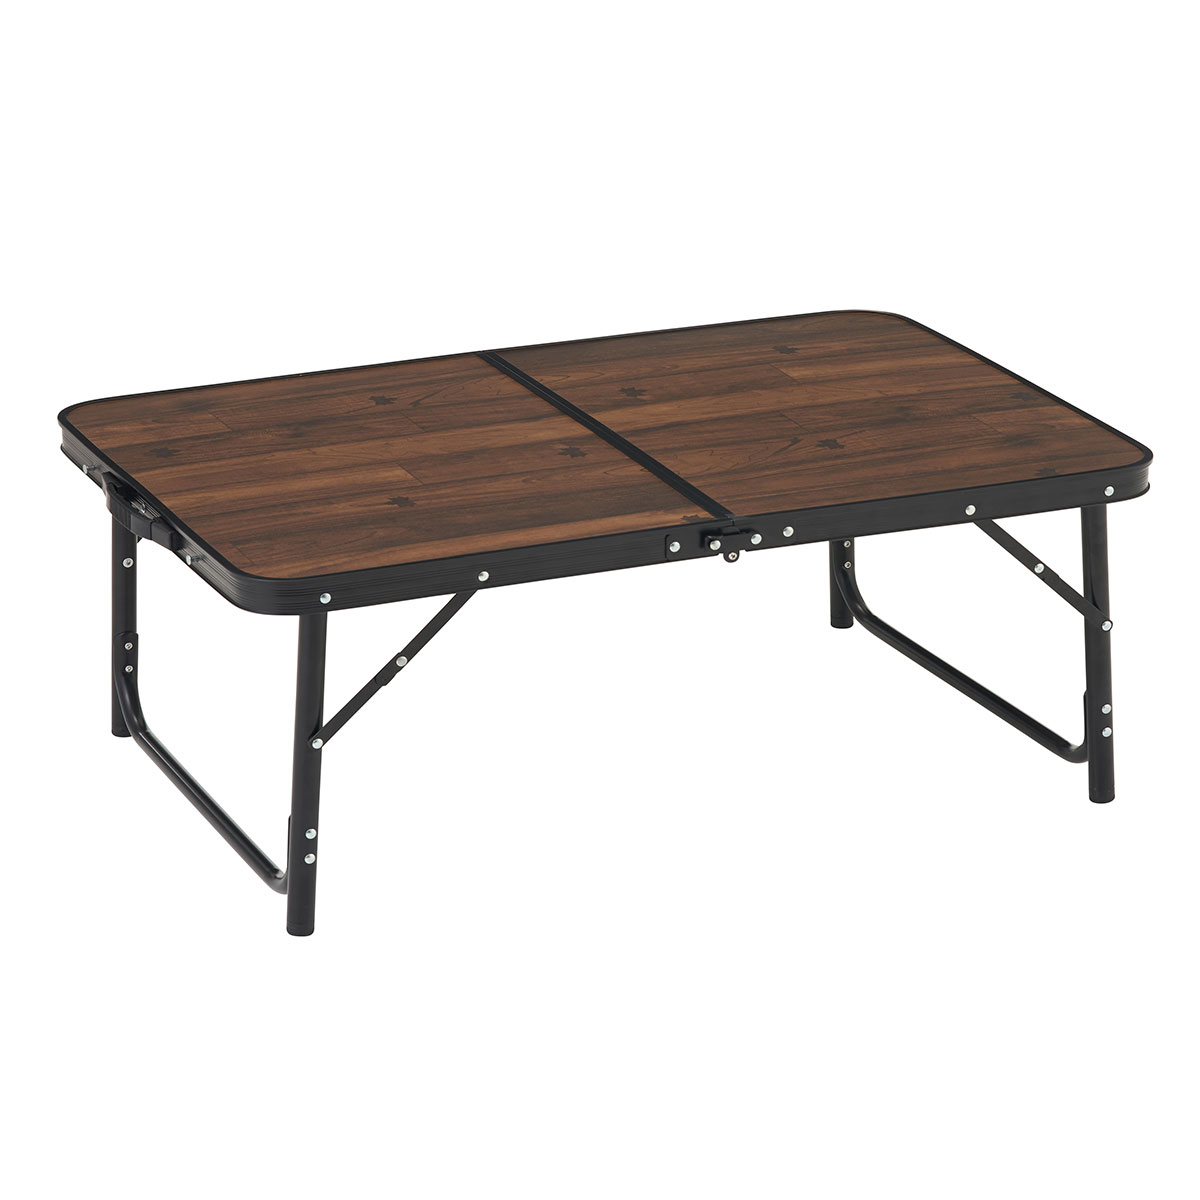 Tracksleeper テーブル 9060|ギア|家具|テーブル|製品情報|ロゴス 